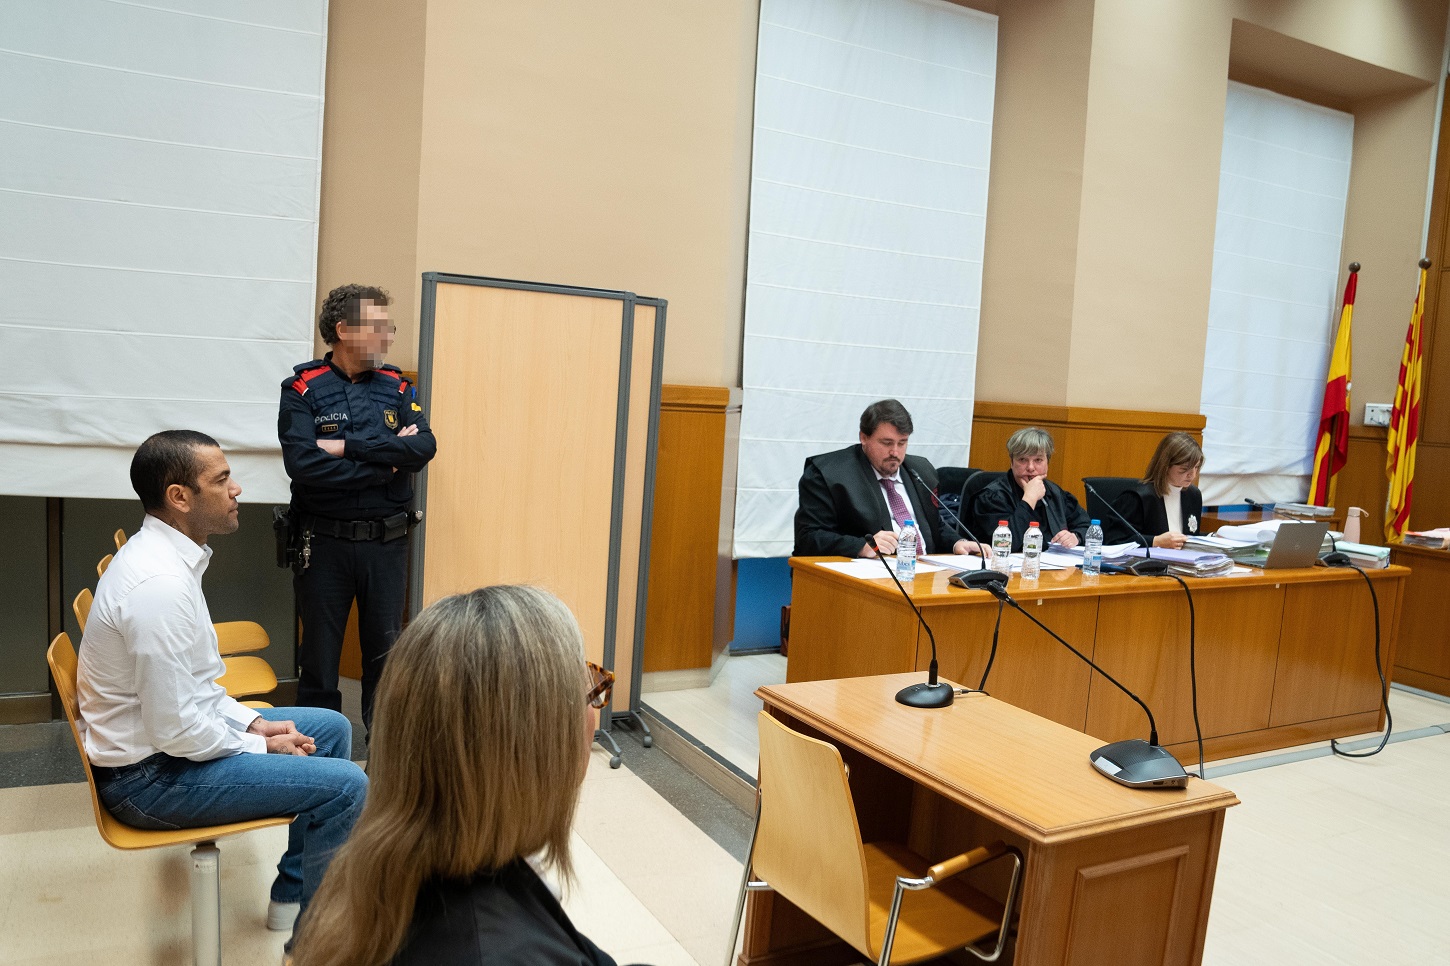 El exfutbolista Dani Alves durante su juicio en la Audiencia de Barcelona, por agresión sexual. EUROPA PRESS/D.Zorrakino/POOL